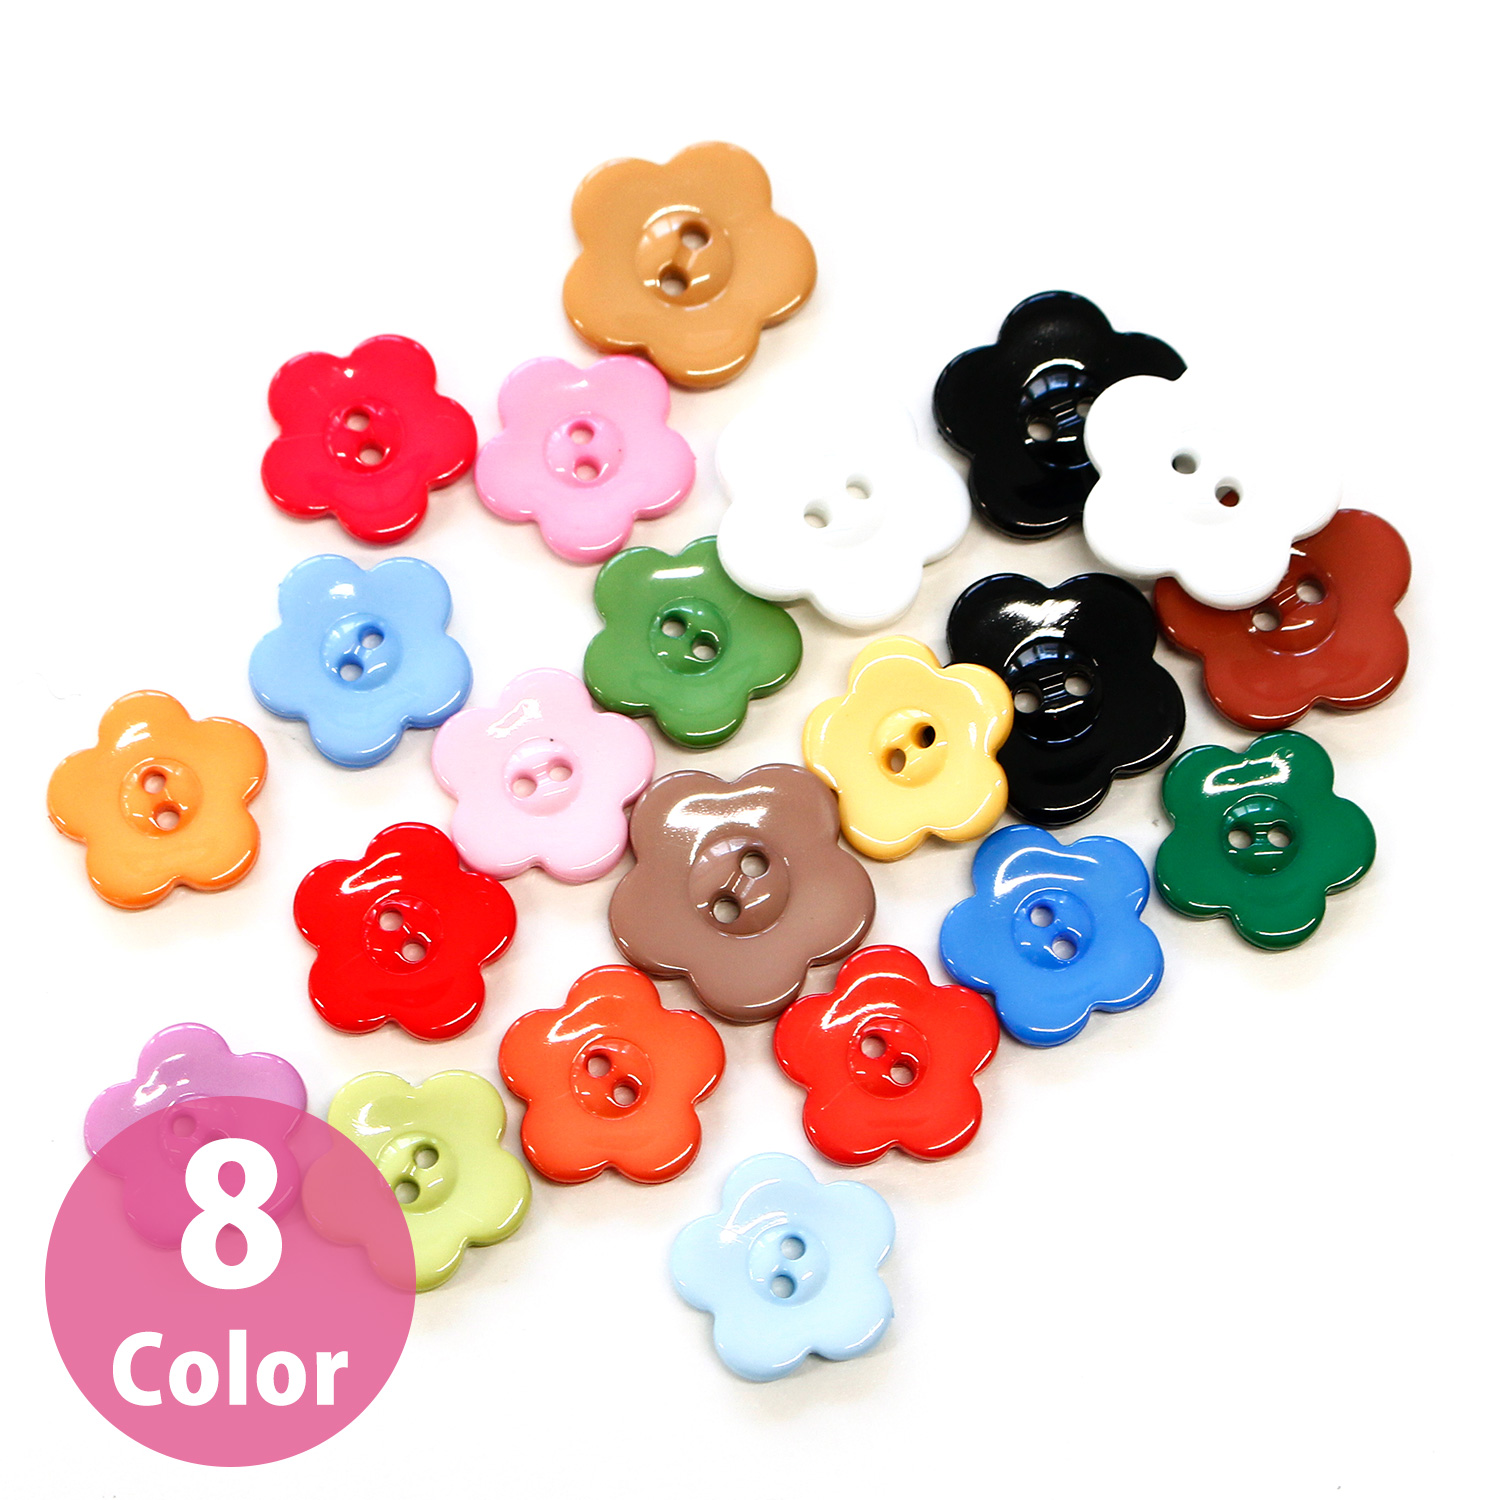 CG9730 Flower-shaped color button assortment set 15mm 6 pieces (set)